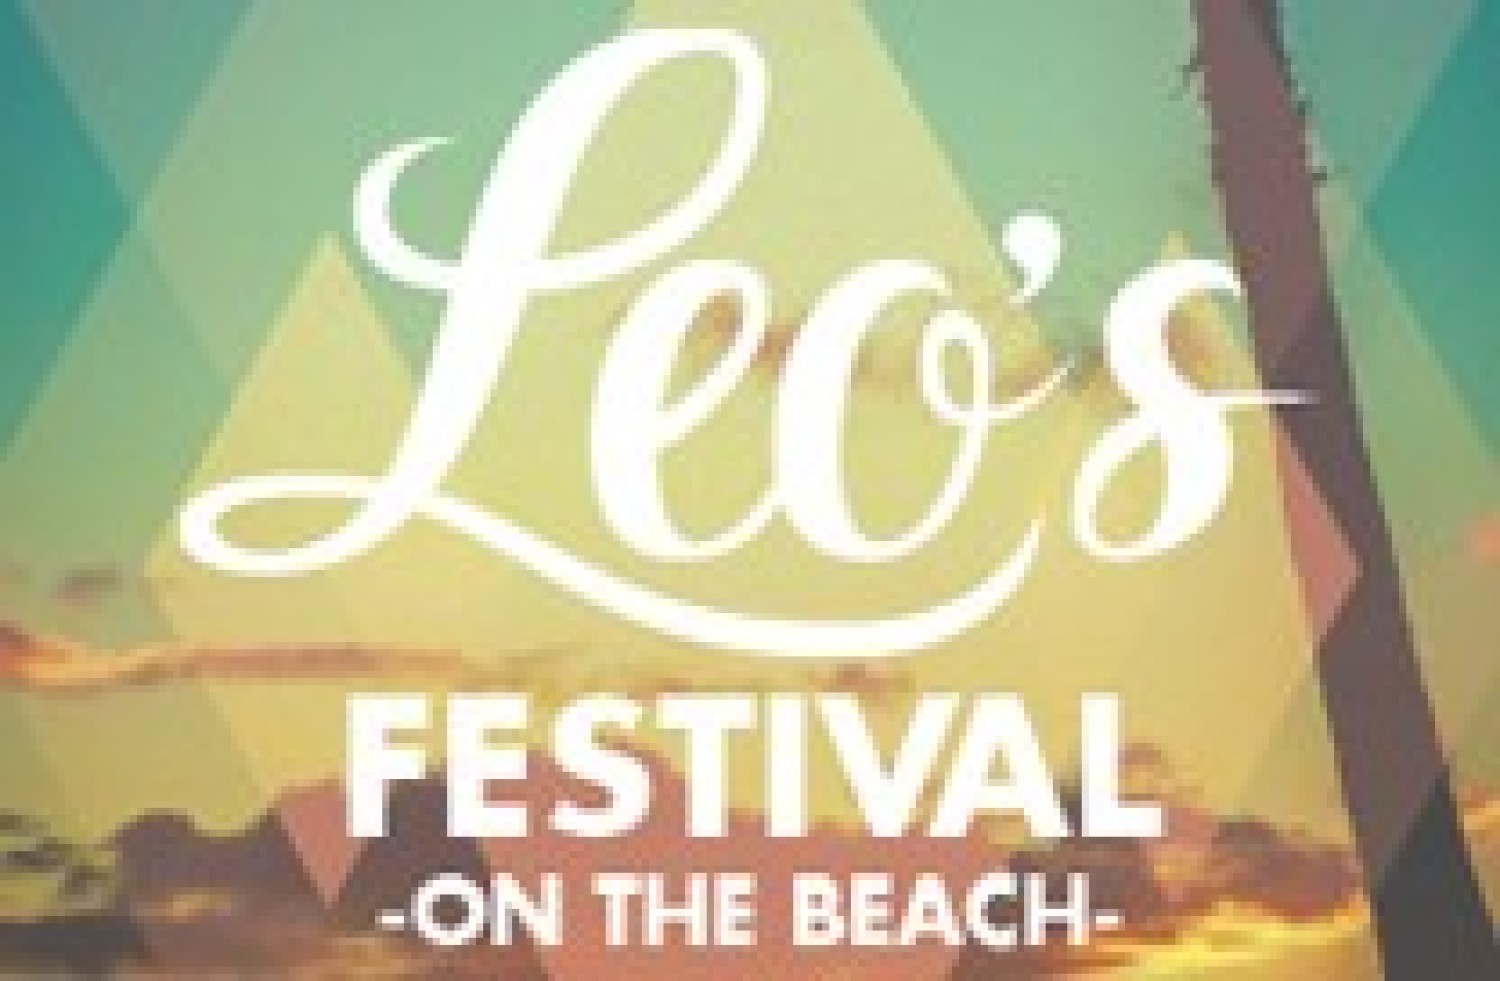 Party nieuws: Leo’s Festival - On The Beach wordt magisch